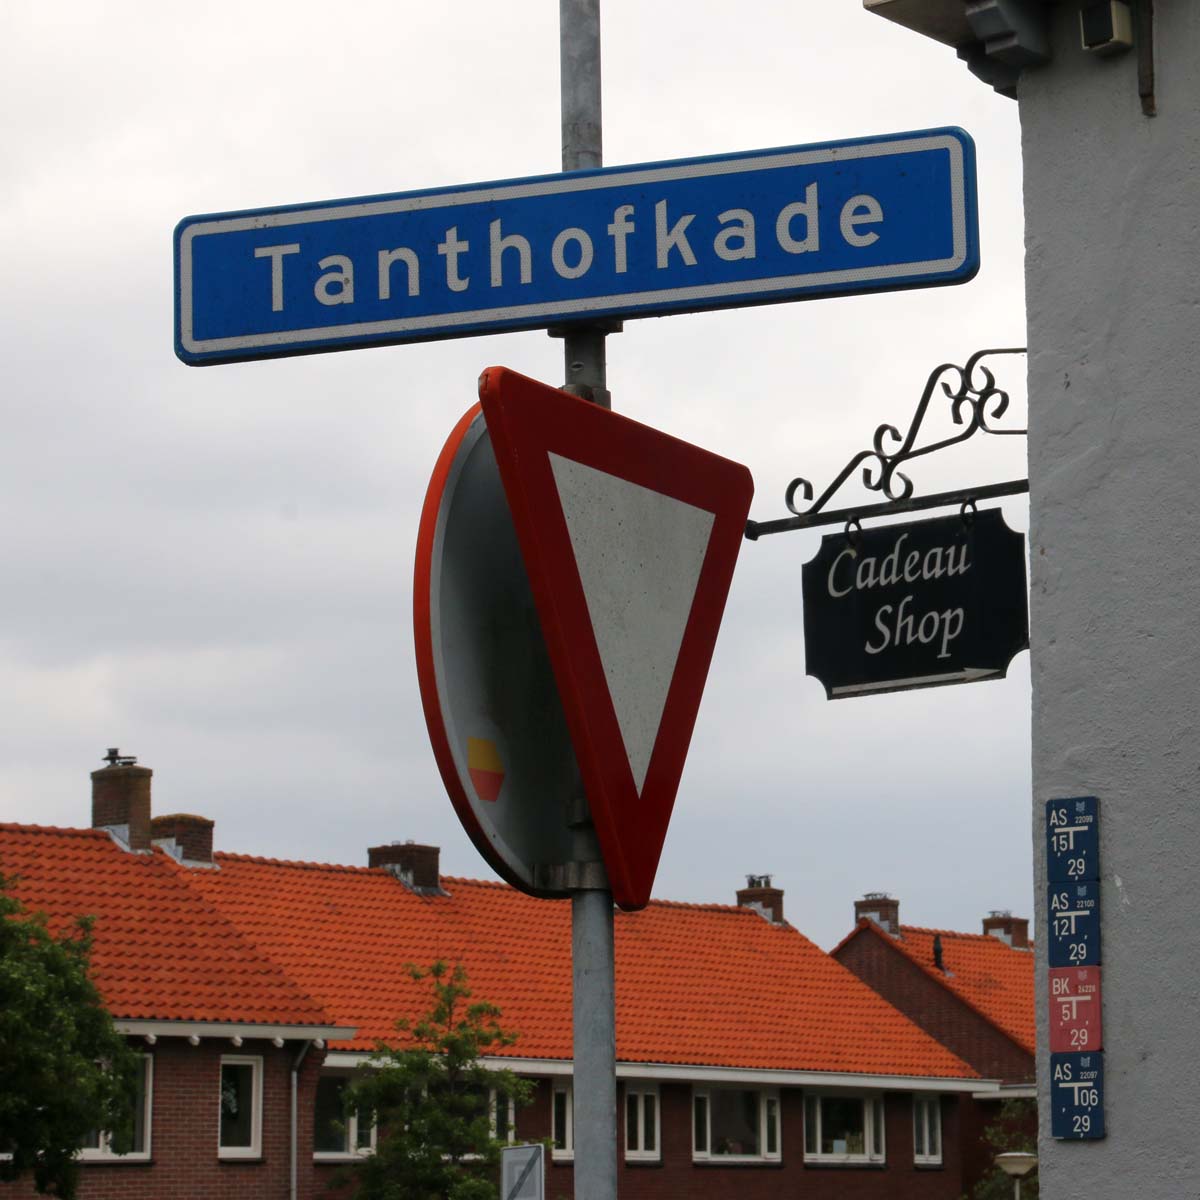 Wandelexcursie Tanthofkade HVOS - 13 juni 2015